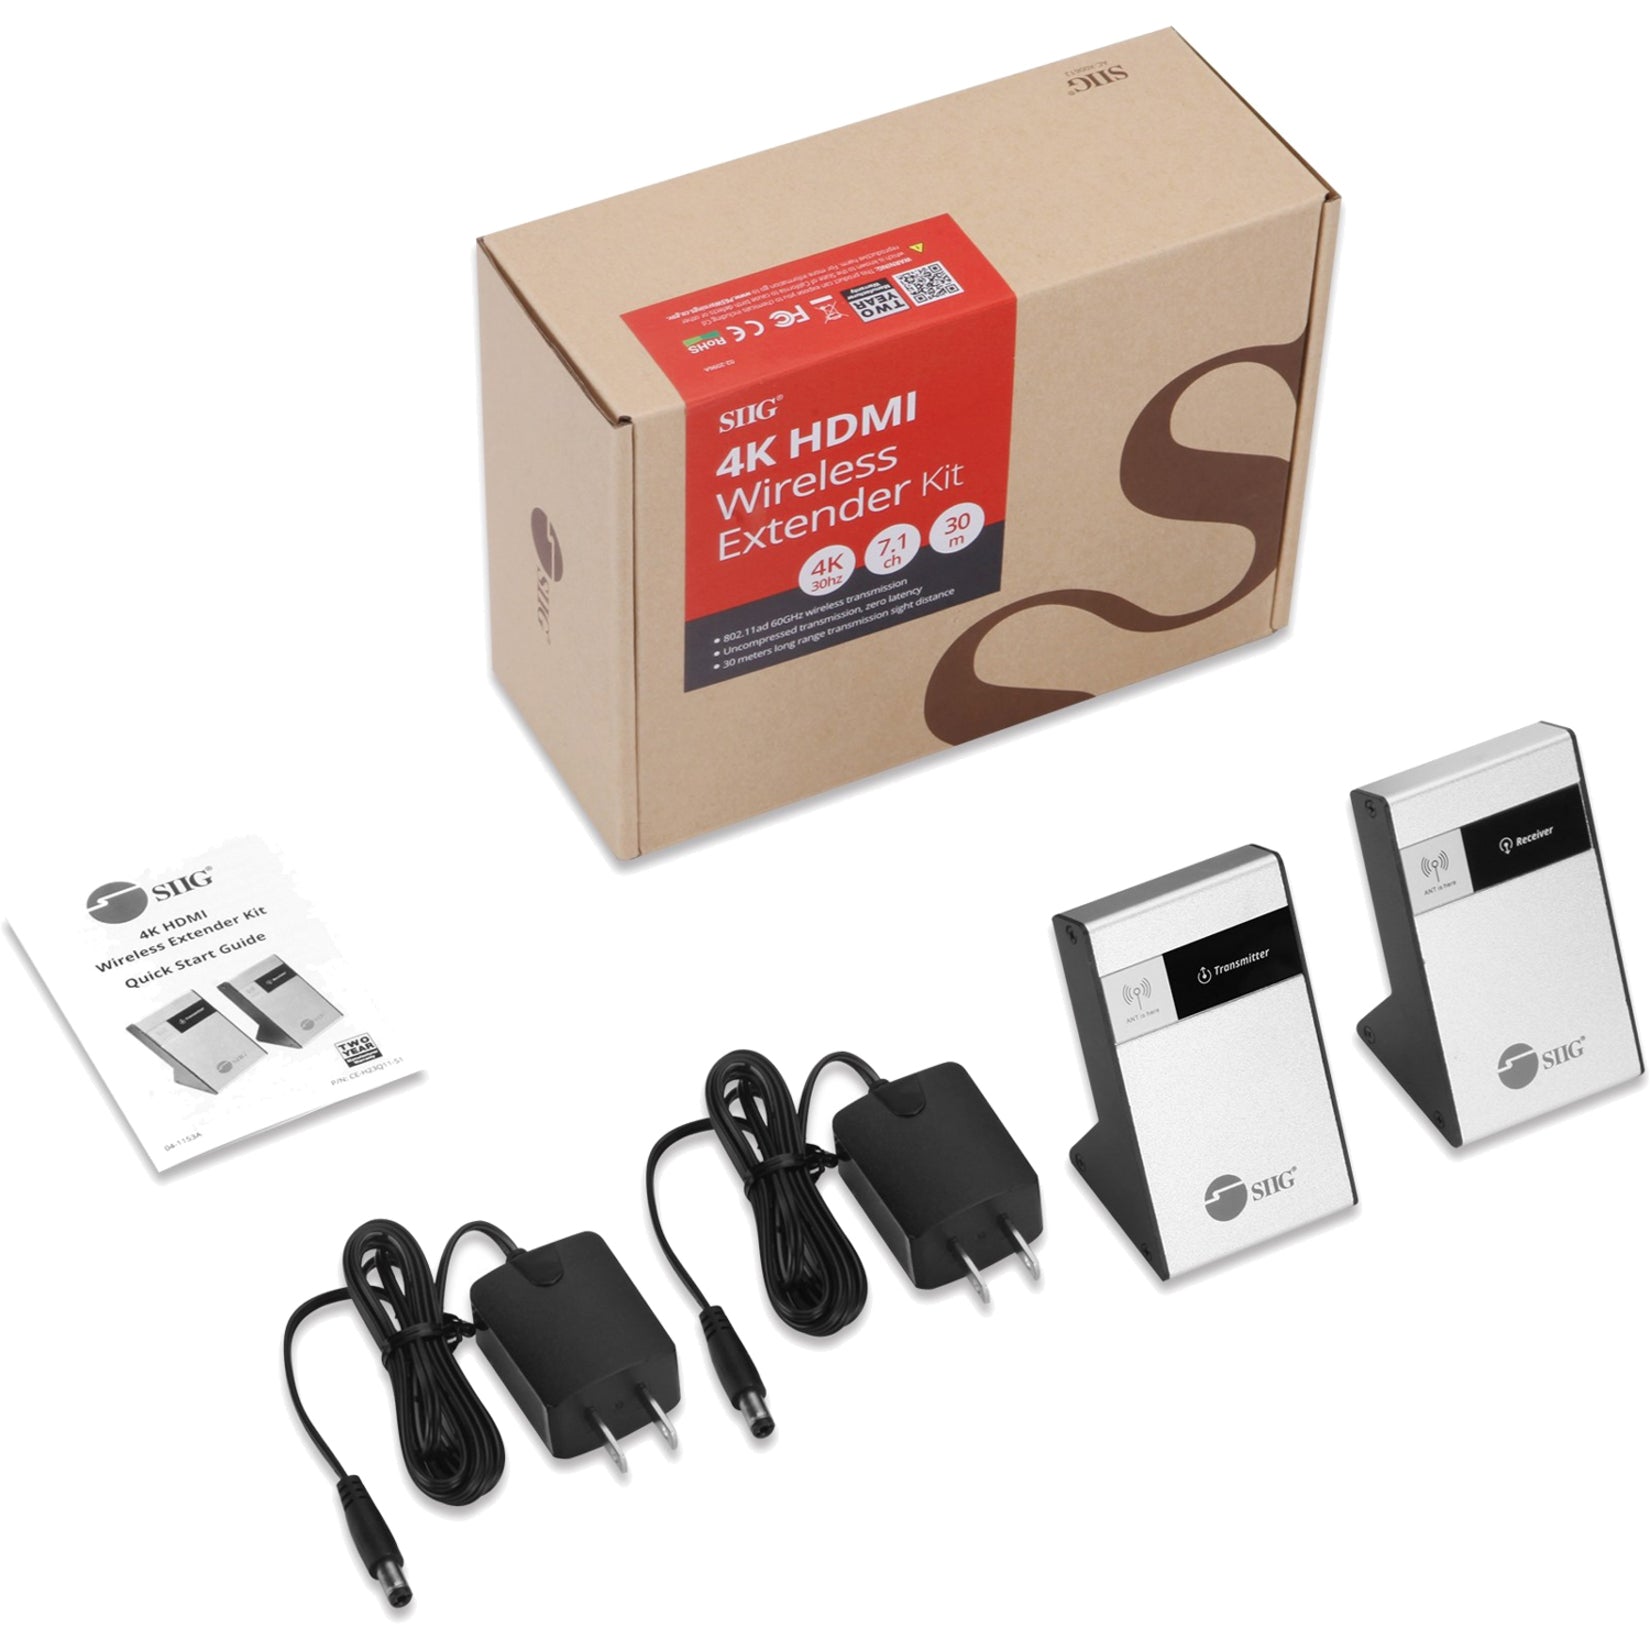 SIIG CE-H23Q11-S1 4K HDMI Wireless Extender Kit, 98ft Range, Easy Setup